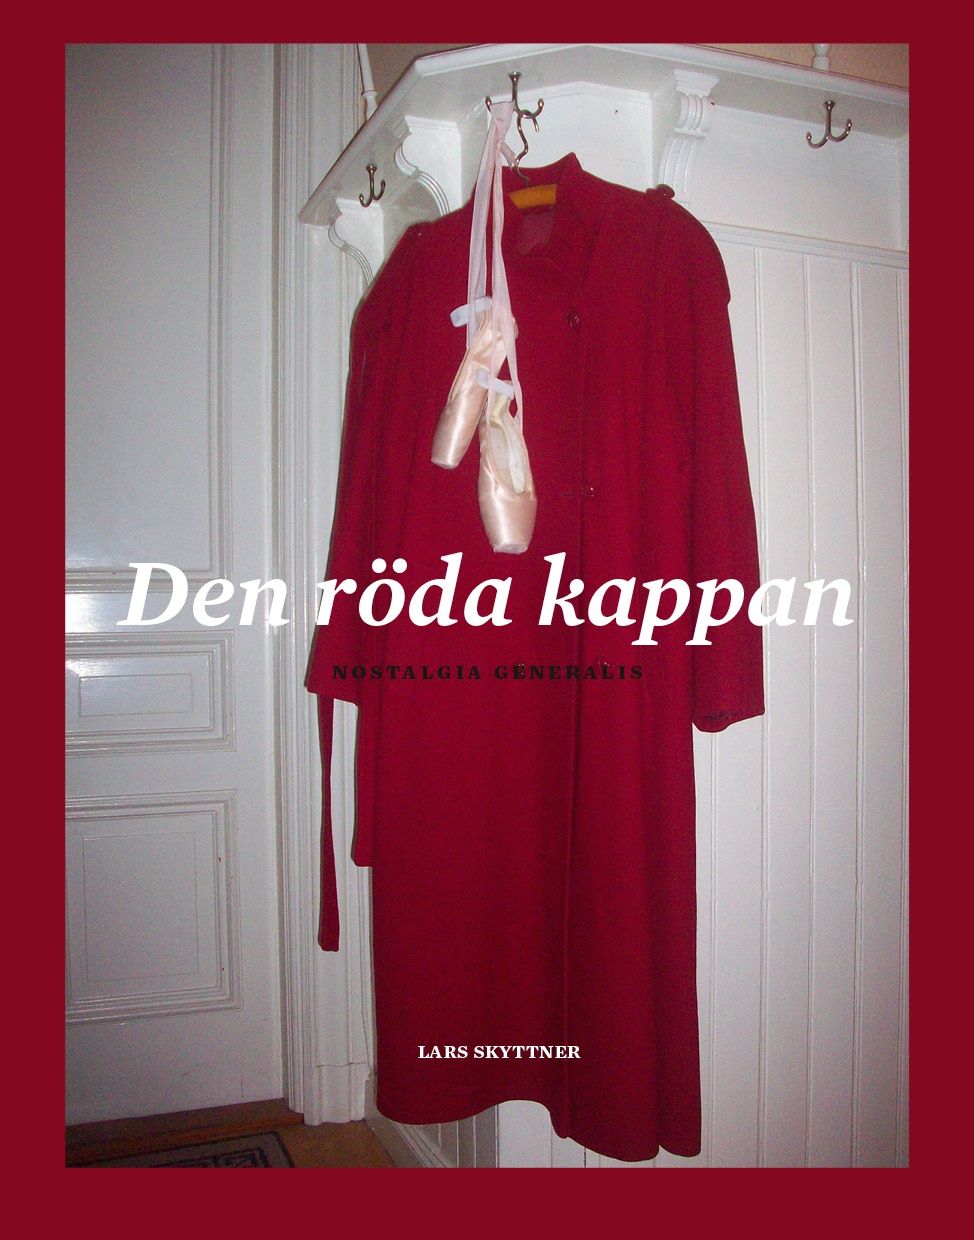 Den röda kappan, eBook by Lars Skyttner